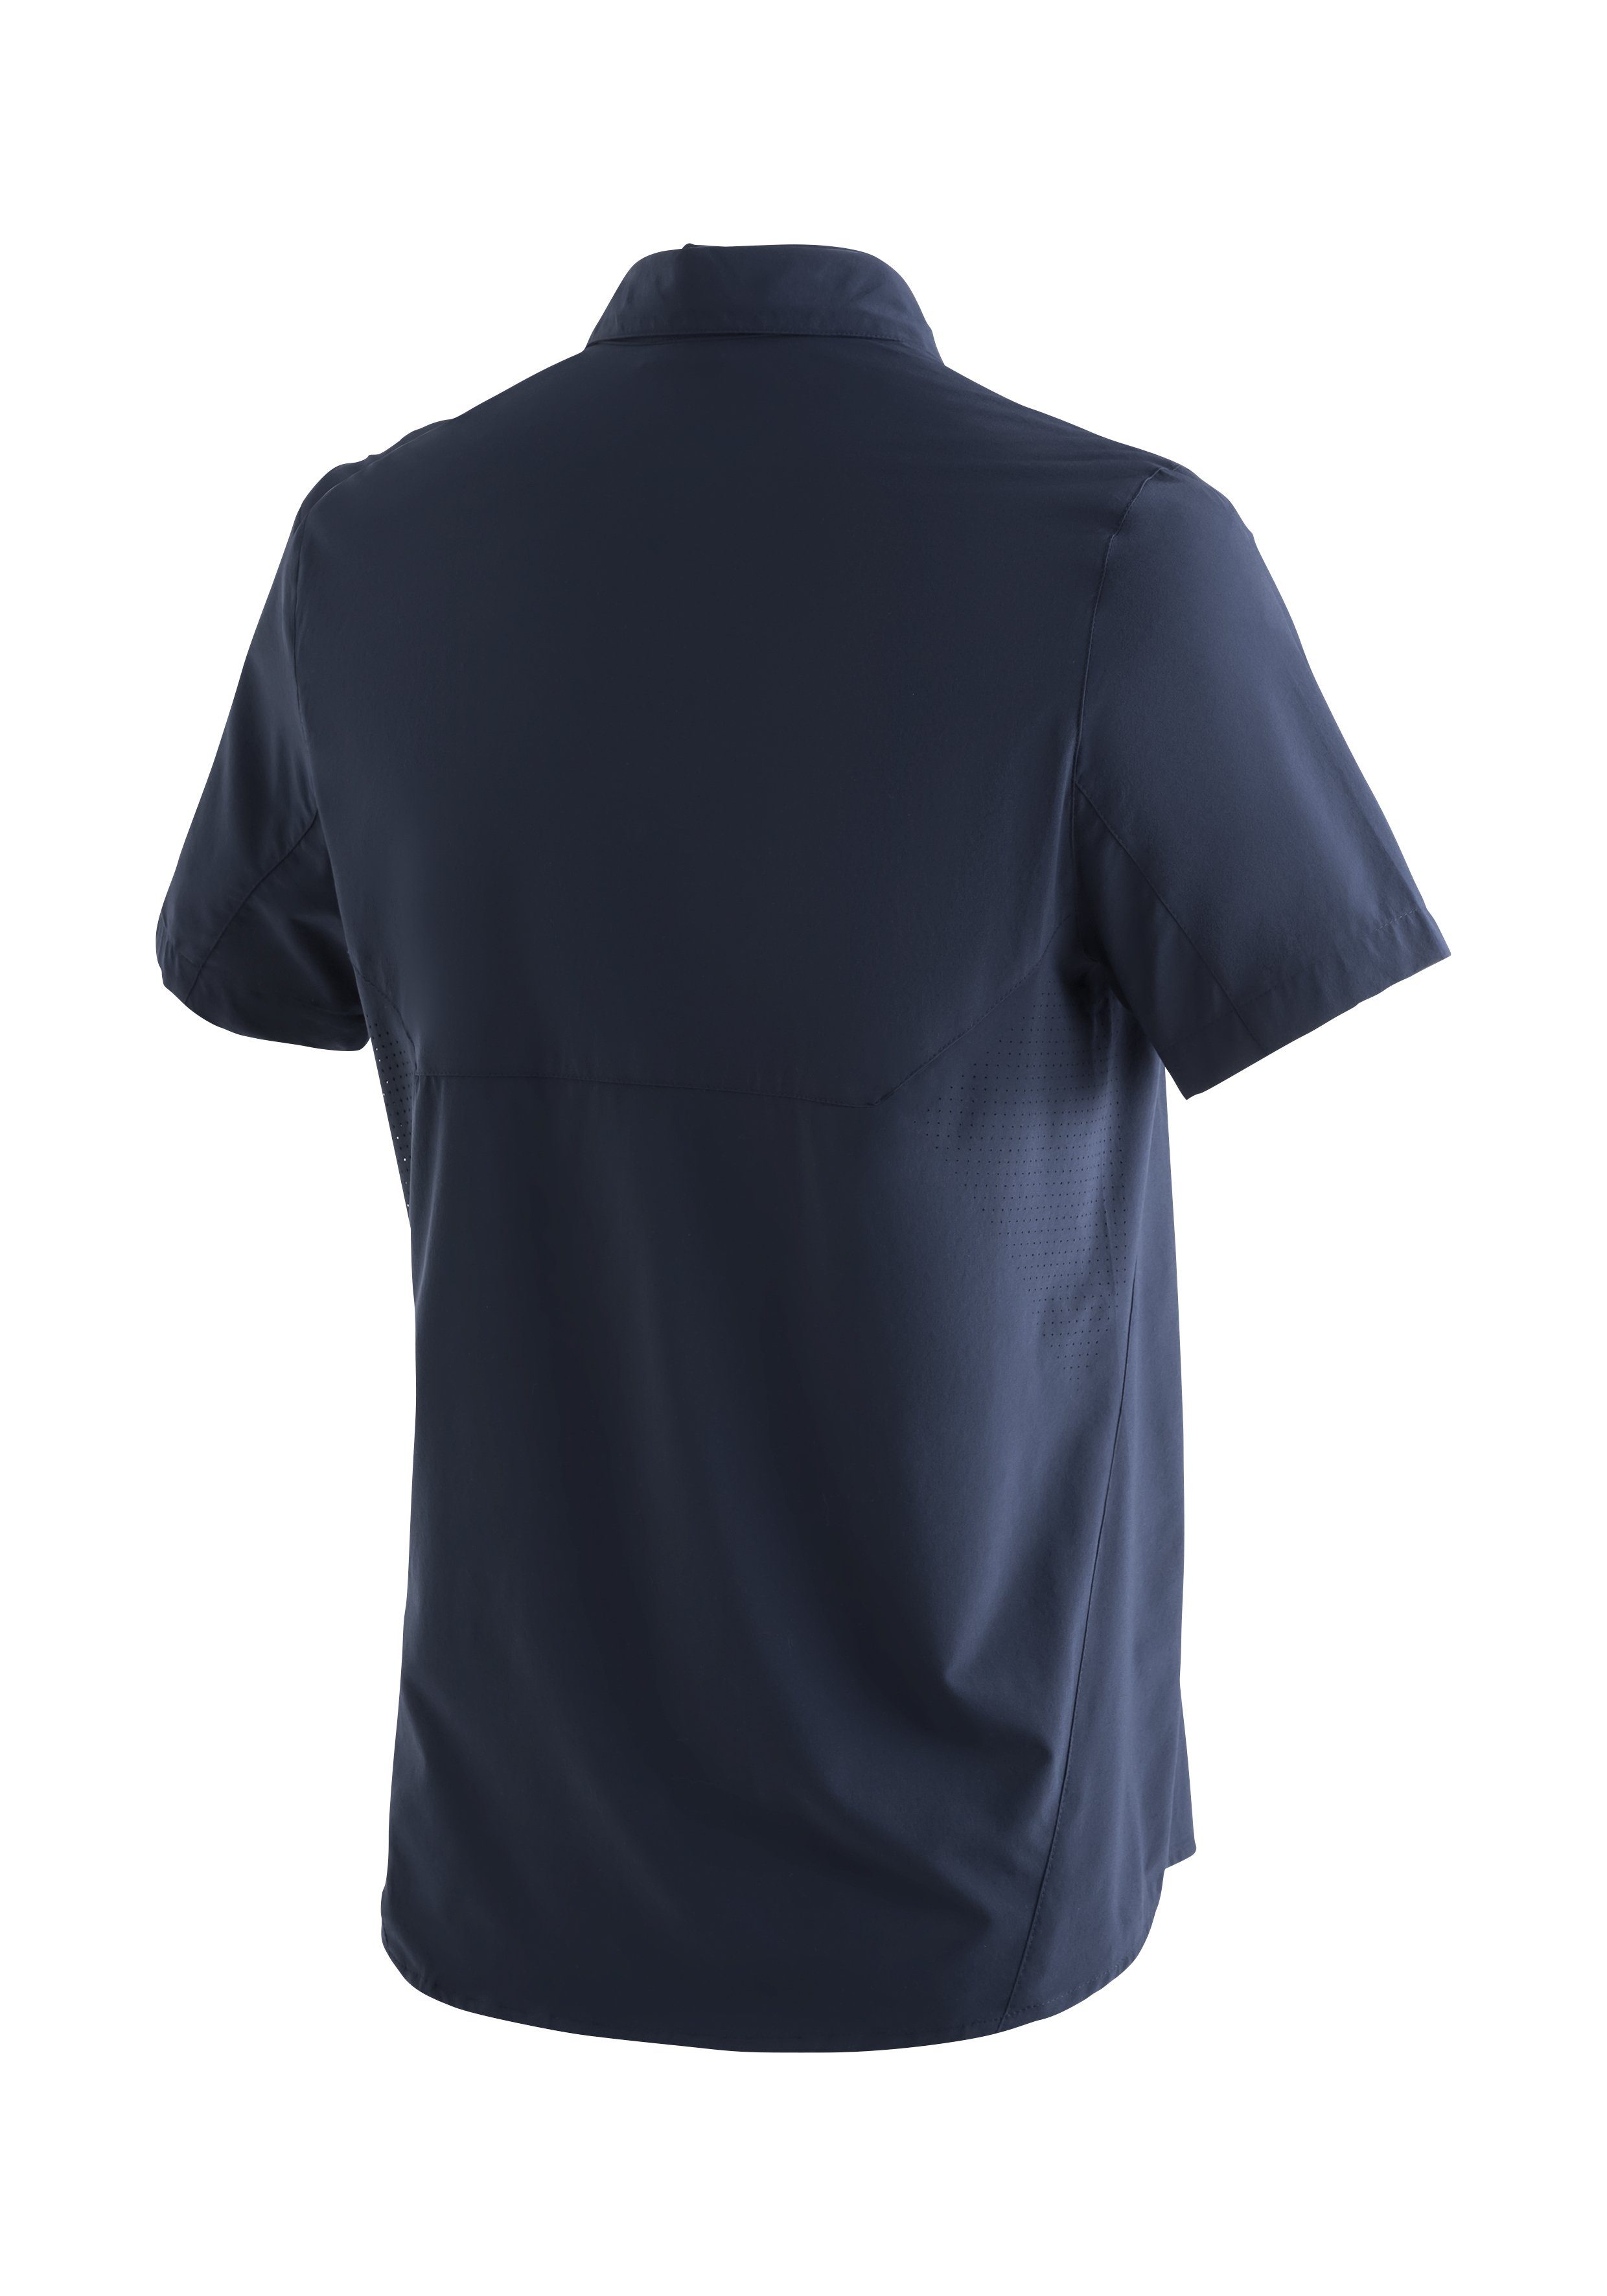 Sports Leichtes, elastisches Maier Sinnes Trekkinghemd Sonnenkragen dunkelblau MS/S Funktionshemd mit Tec